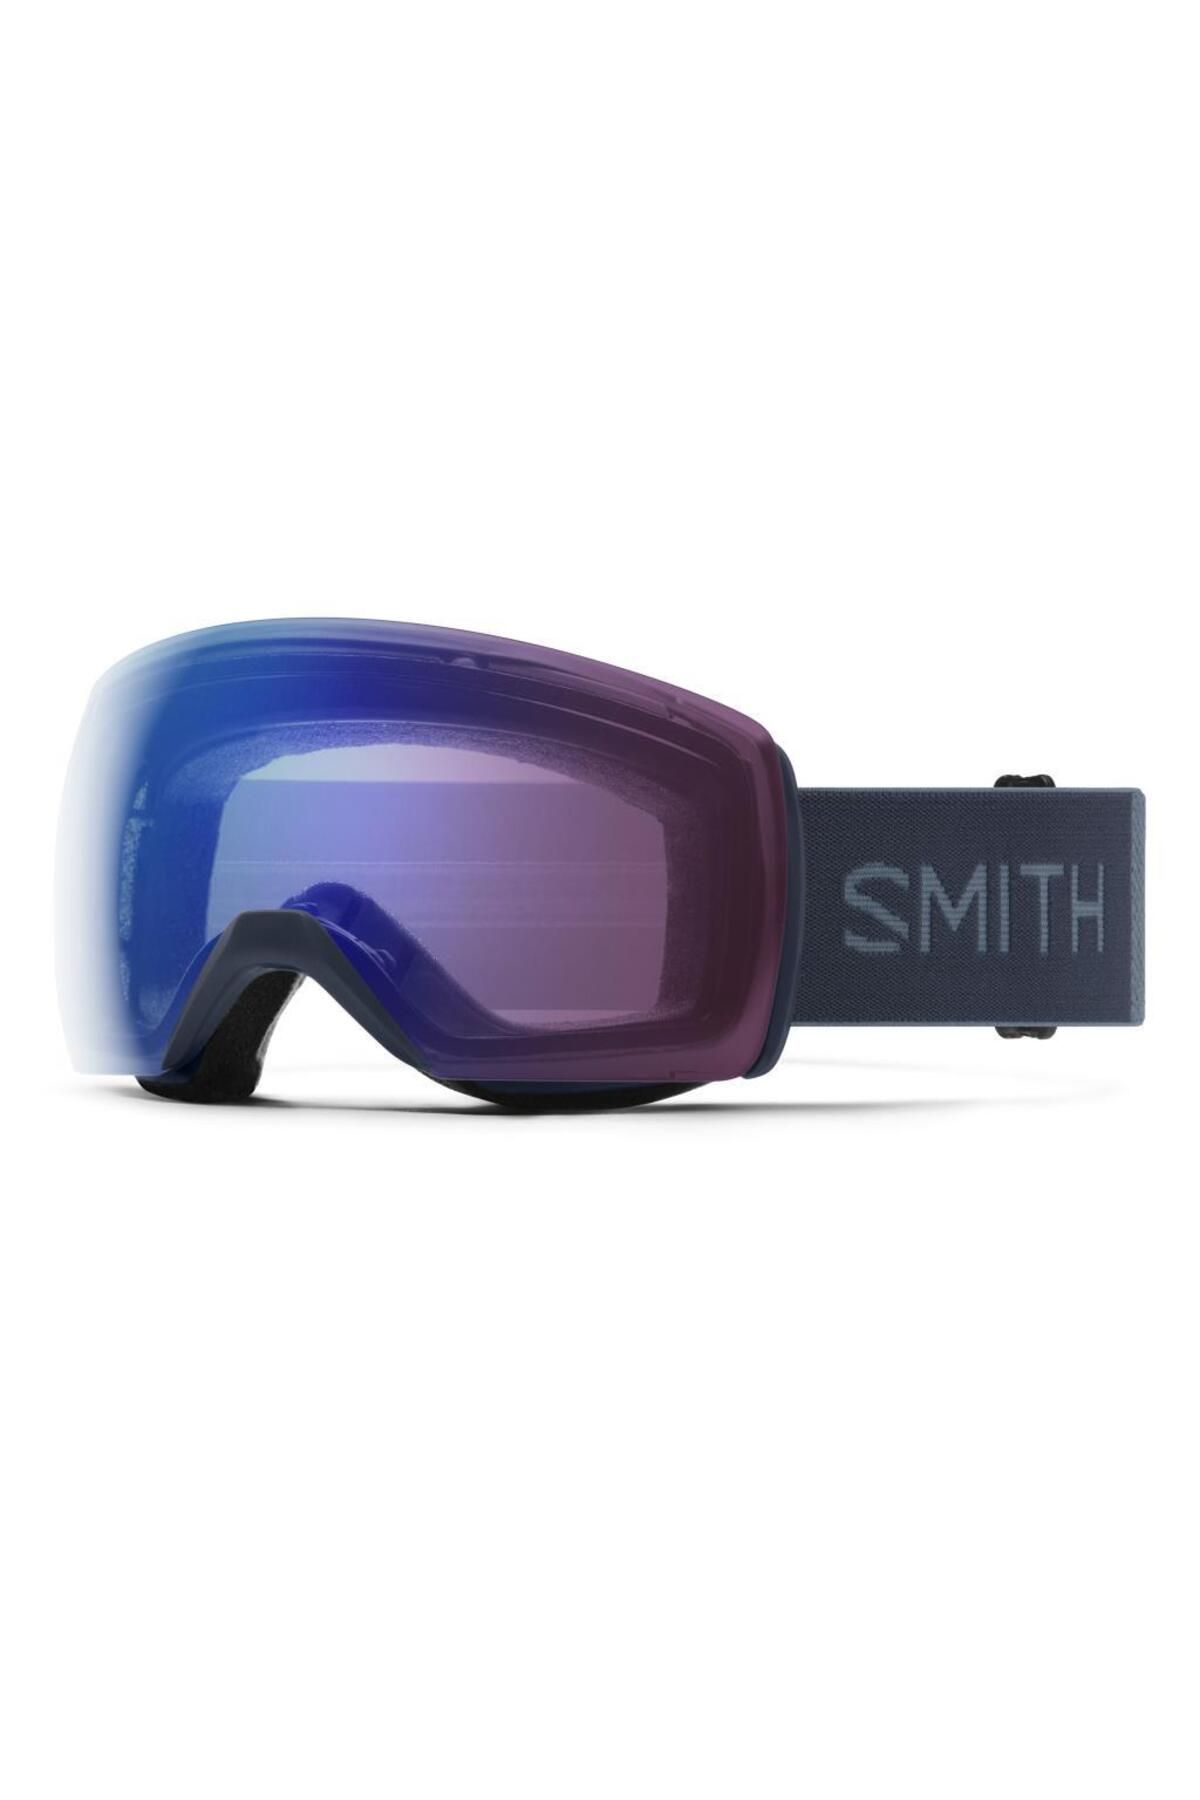 Smith Skyline Xl 2r74g Kolormatik Kayak Gözlüğü